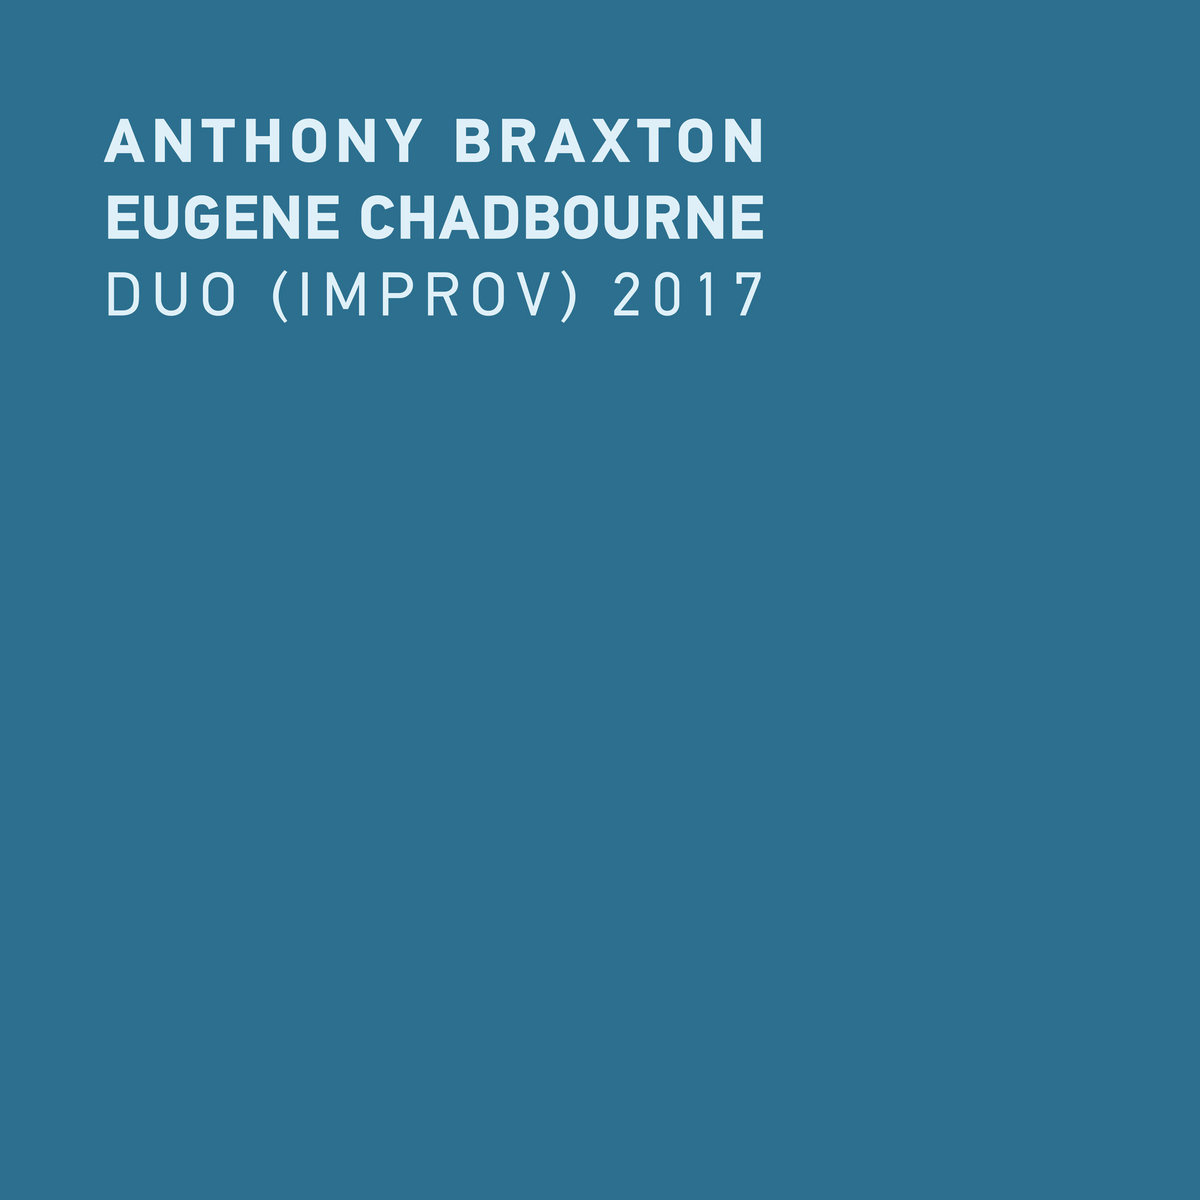 Anthony Braxton & Eugene Chadbourne - Duo (Improv) 2017 (2020) [FLAC 24bit/48kHz]